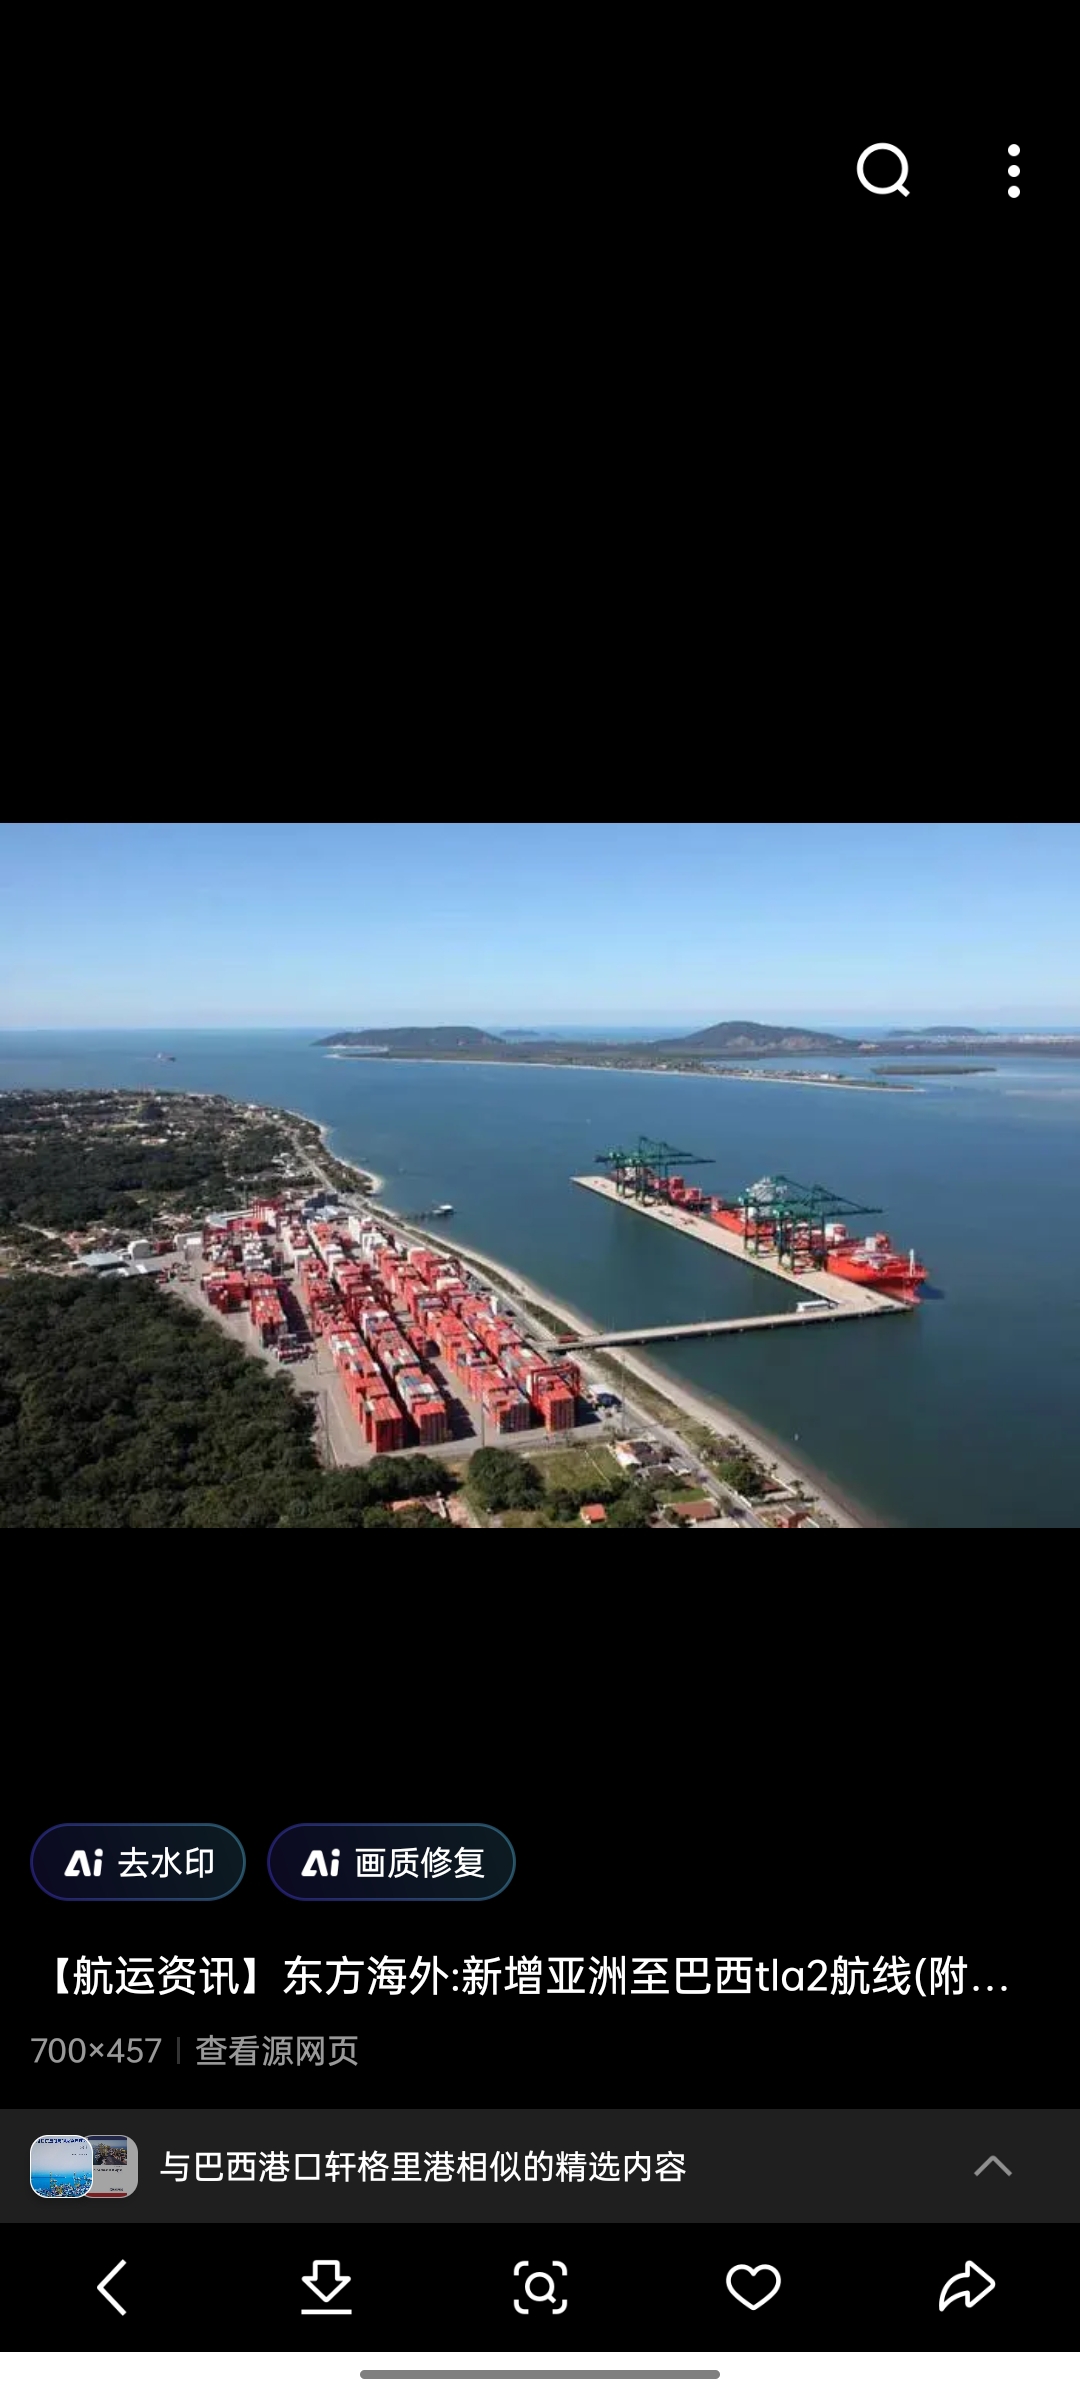 轩格里港 阿雷格里港(英文名:porto alegre)是巴西港口之一,港口代码为BRPAL。